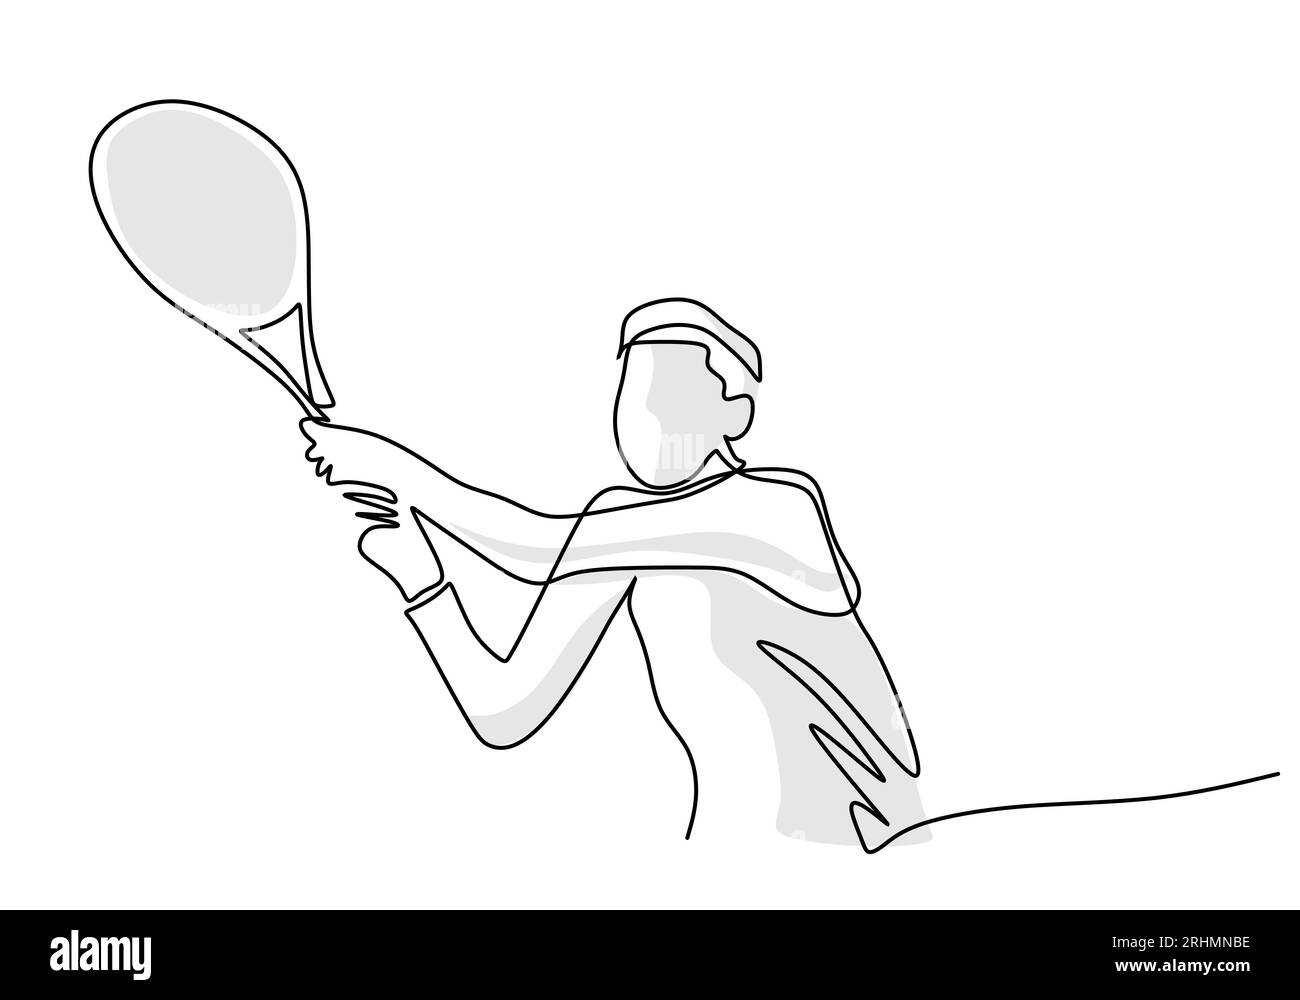 Tennis Player Simple One Line Art, illustrazione sportiva della persona che gioca a tennis Illustrazione Vettoriale